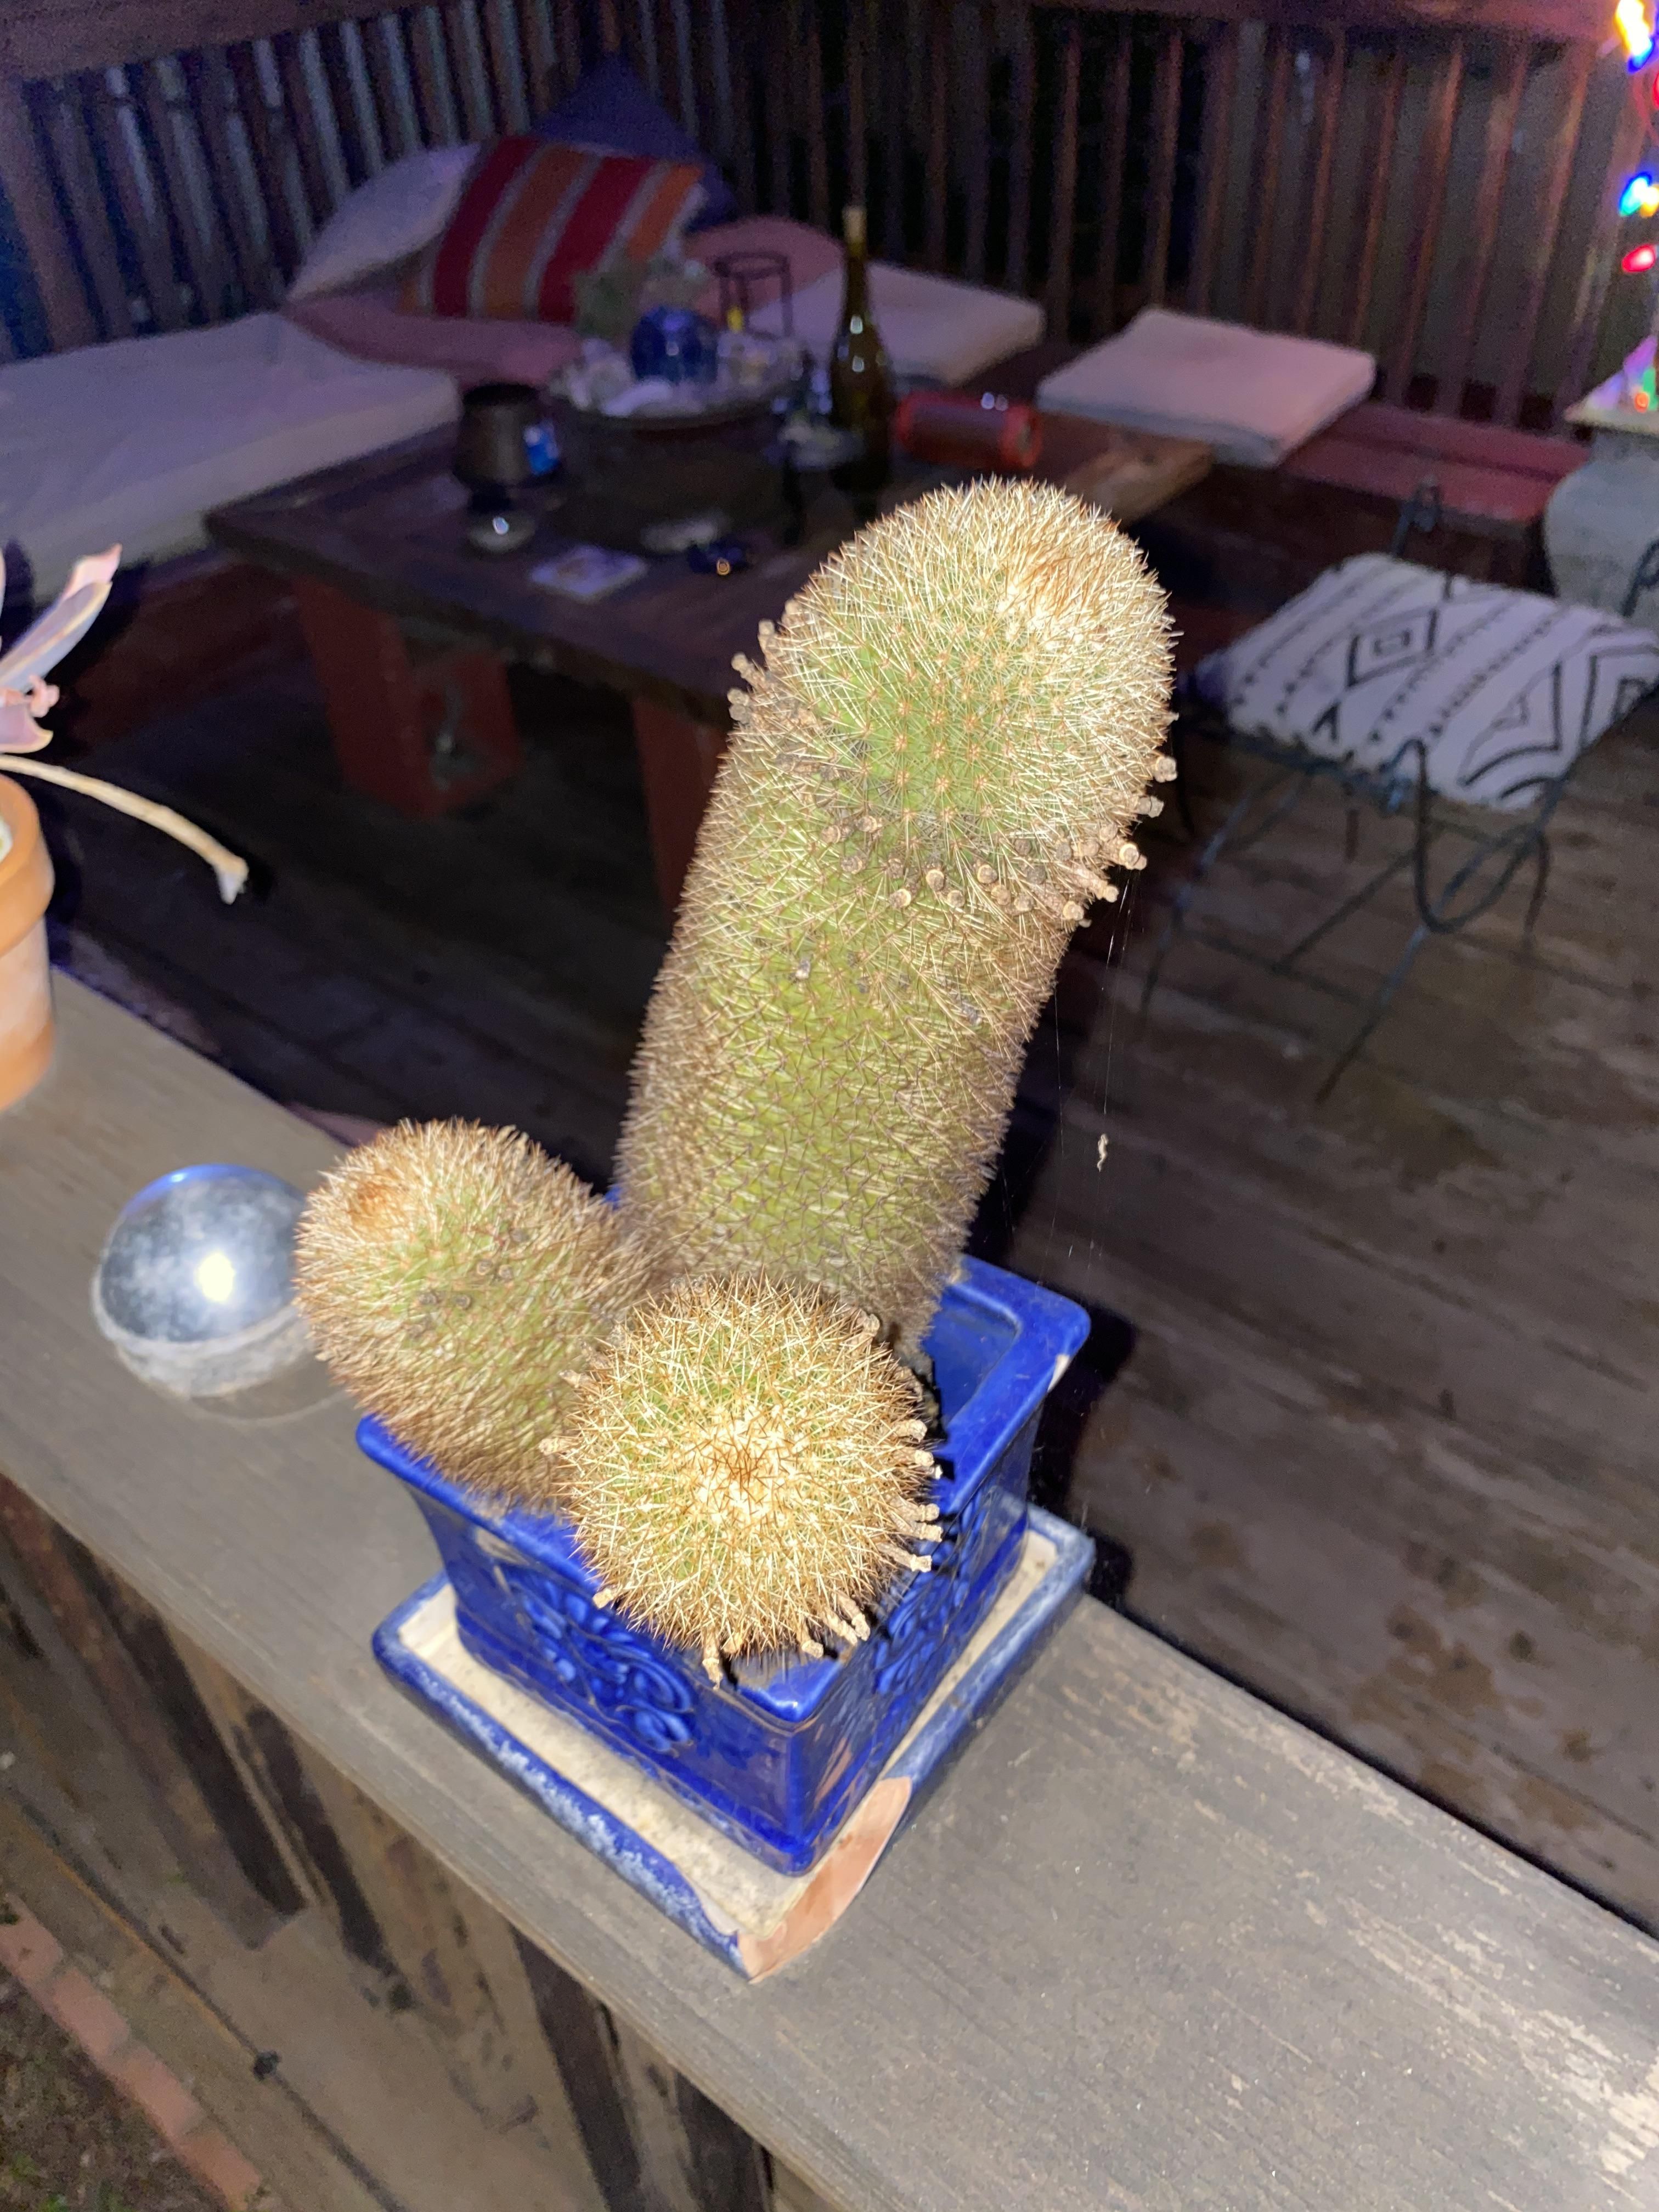 This prickly cactus I found